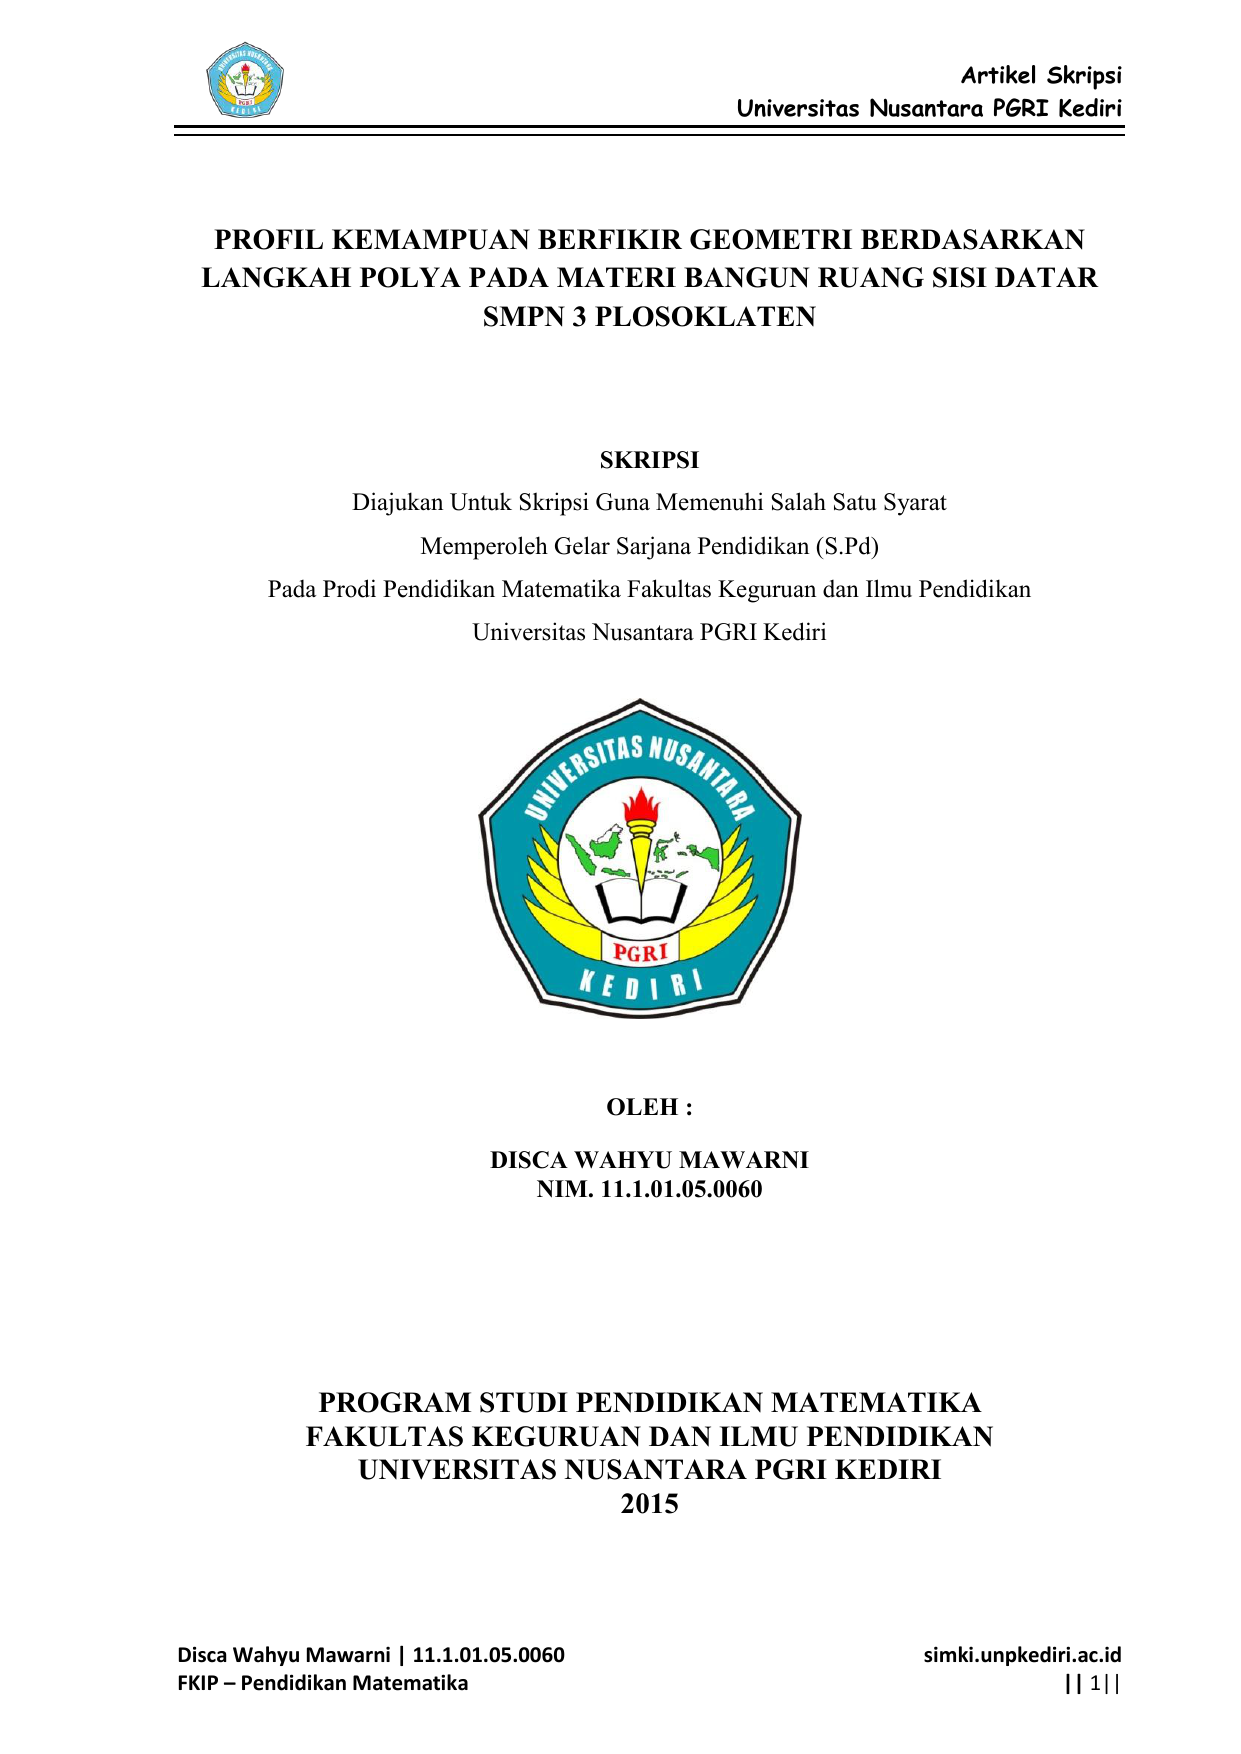 Artikel Skripsi Universitas Nusantara PGRI Kediri PROFIL KEMAMPUAN BERFIKIR GEOMETRI BERDASARKAN LANGKAH POLYA PADA MATERI BANGUN RUANG SISI DATAR SMPN 3